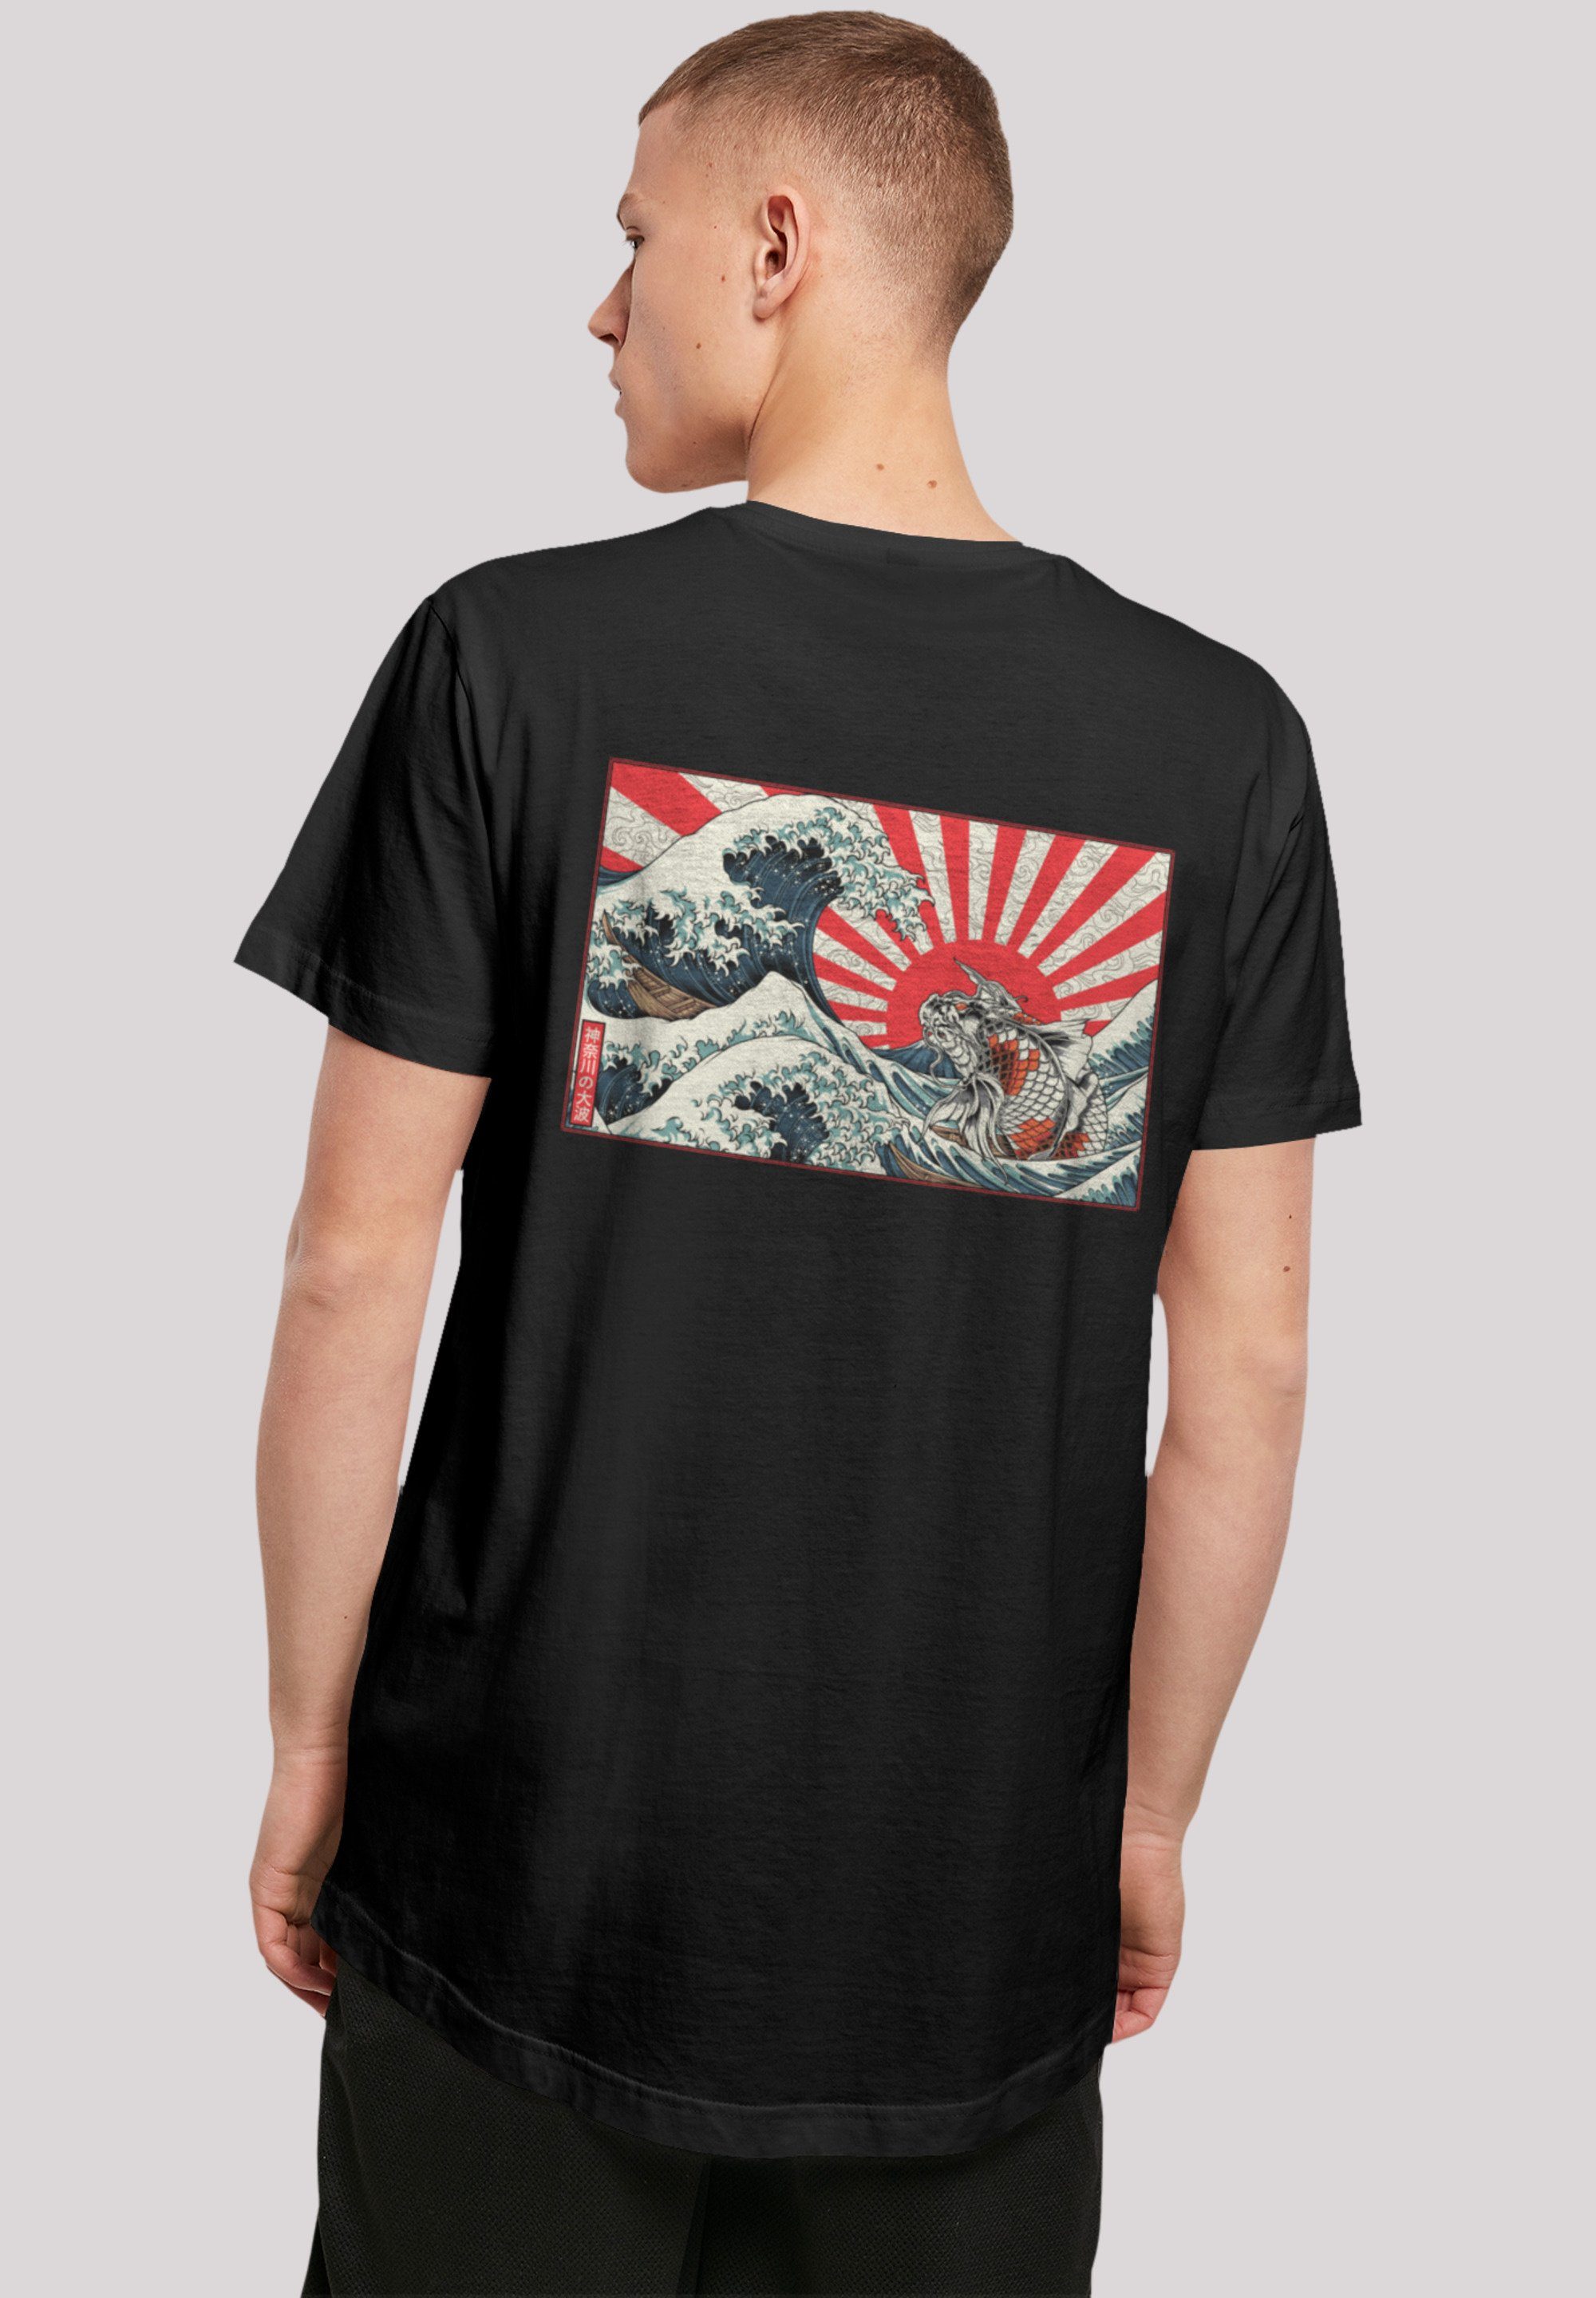 F4NT4STIC T-Shirt Kanagawa hohem Print, Welle Sehr Japan mit Baumwollstoff weicher Tragekomfort